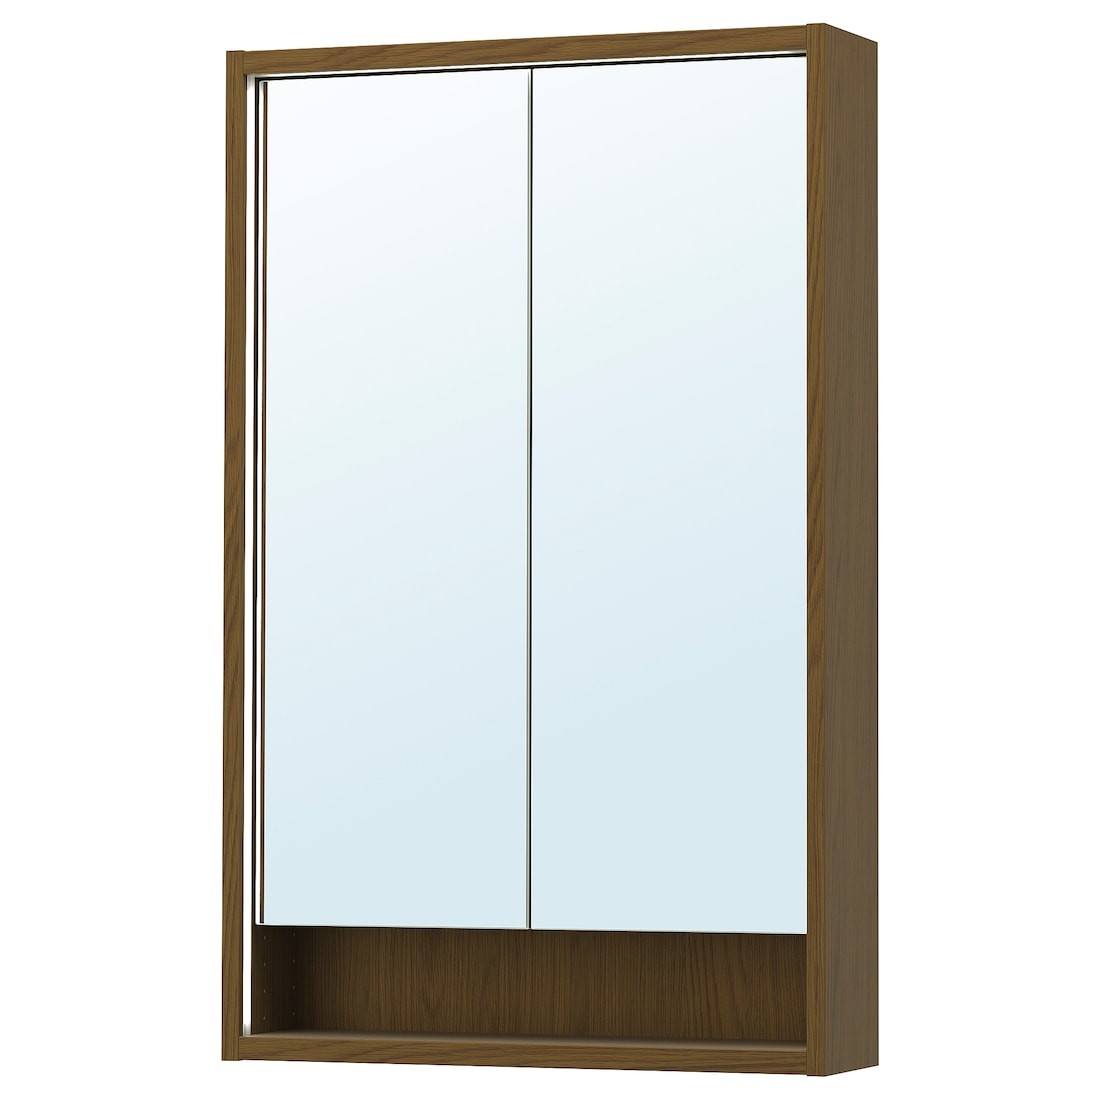 FAXÄLVEN Зеркальный шкаф со встроенной подсветкой, коричневая имитация дуб, 60x15x95 см